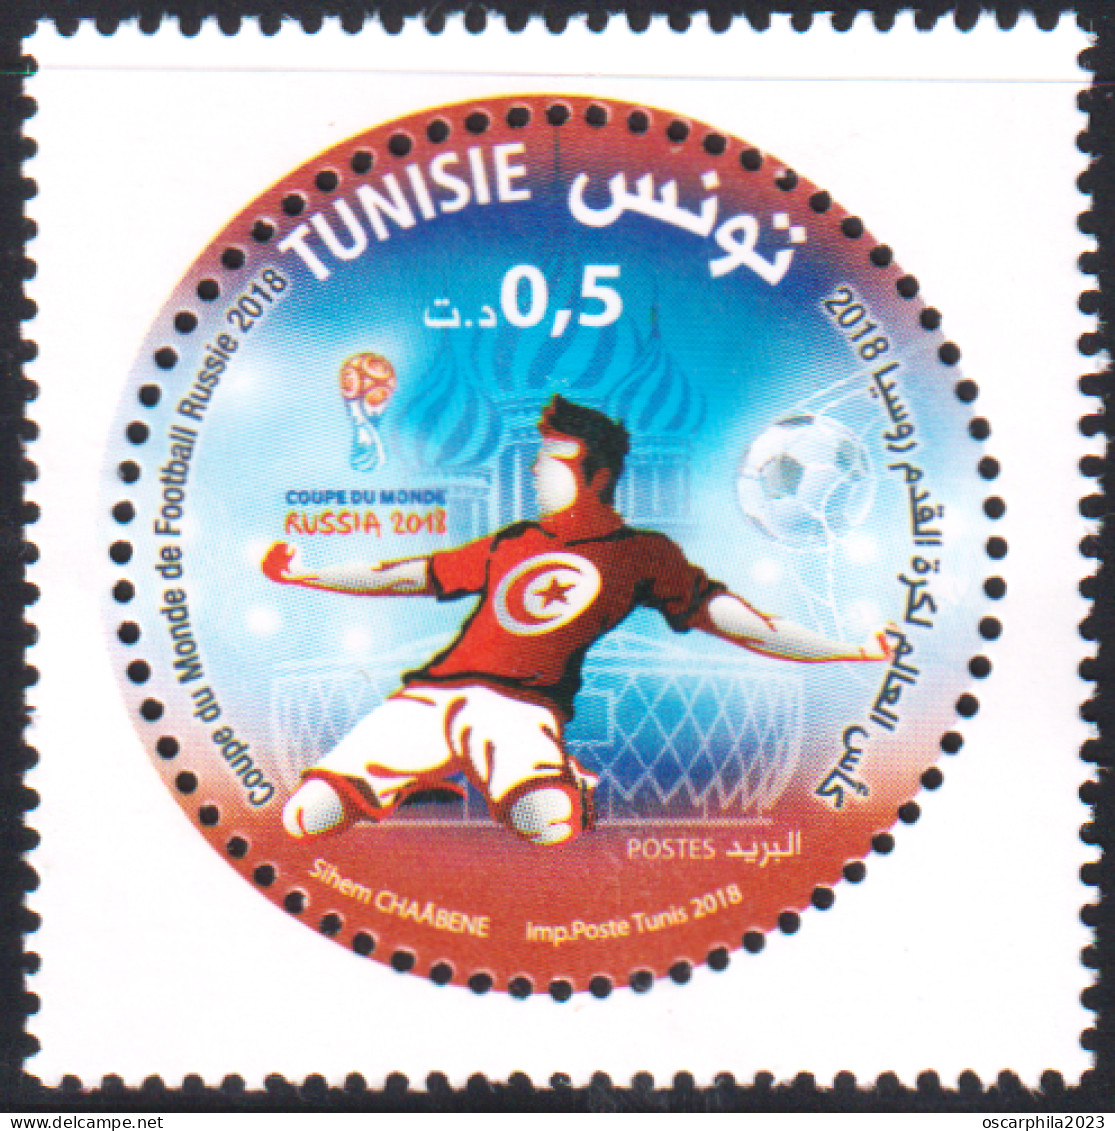 2018 - Tunisie  - Coupe Du Monde De Football Russie 2018  - 1V - MNH*** - Tunesien (1956-...)